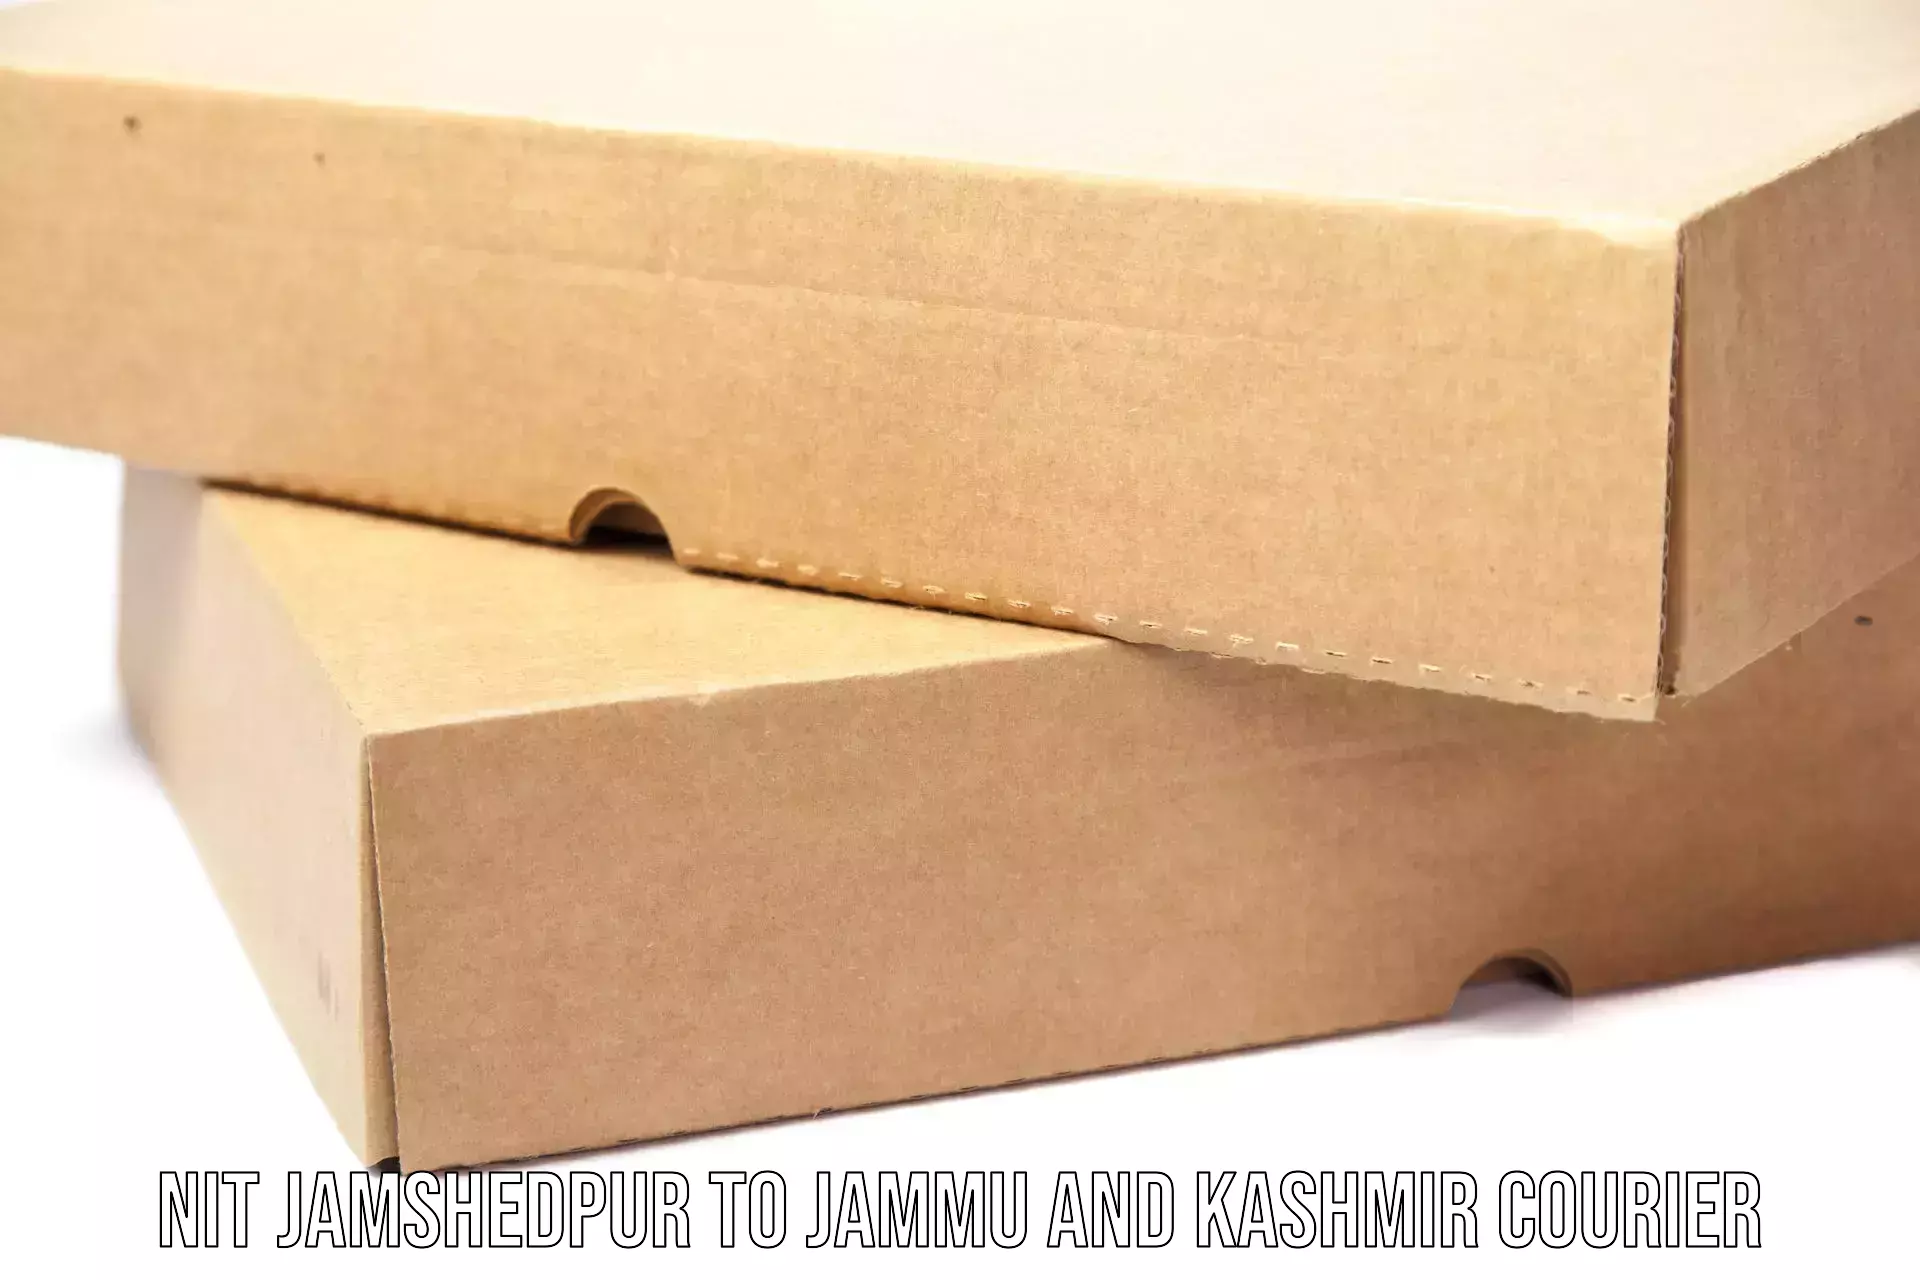 Cargo delivery service NIT Jamshedpur to University of Kashmir Srinagar